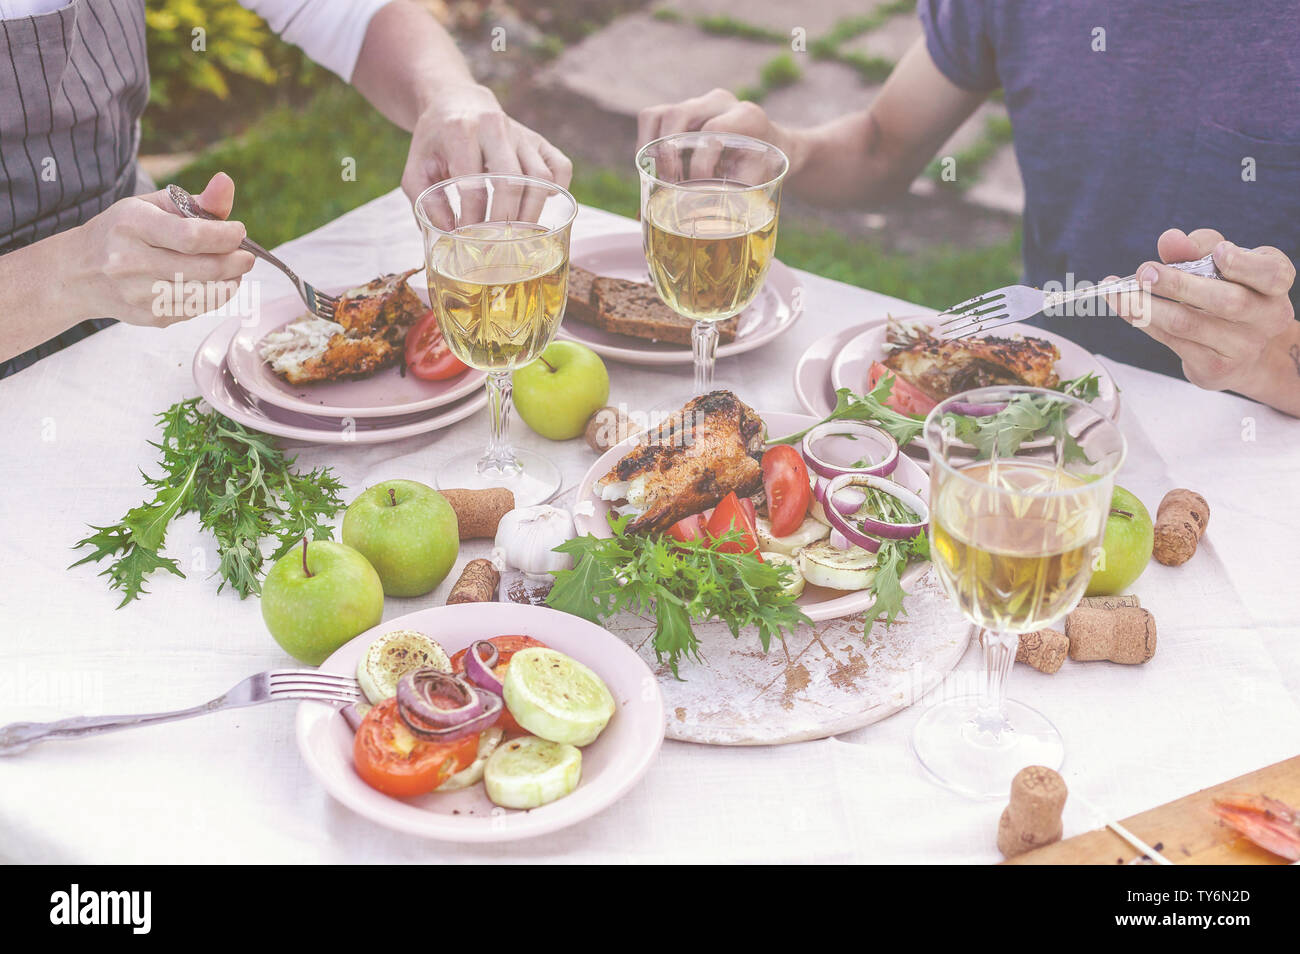 La cena in giardino. La gente mangia a tavola con vino e grigliate di pesce, verdure fresche e erbe aromatiche. Inquadratura orizzontale Foto Stock